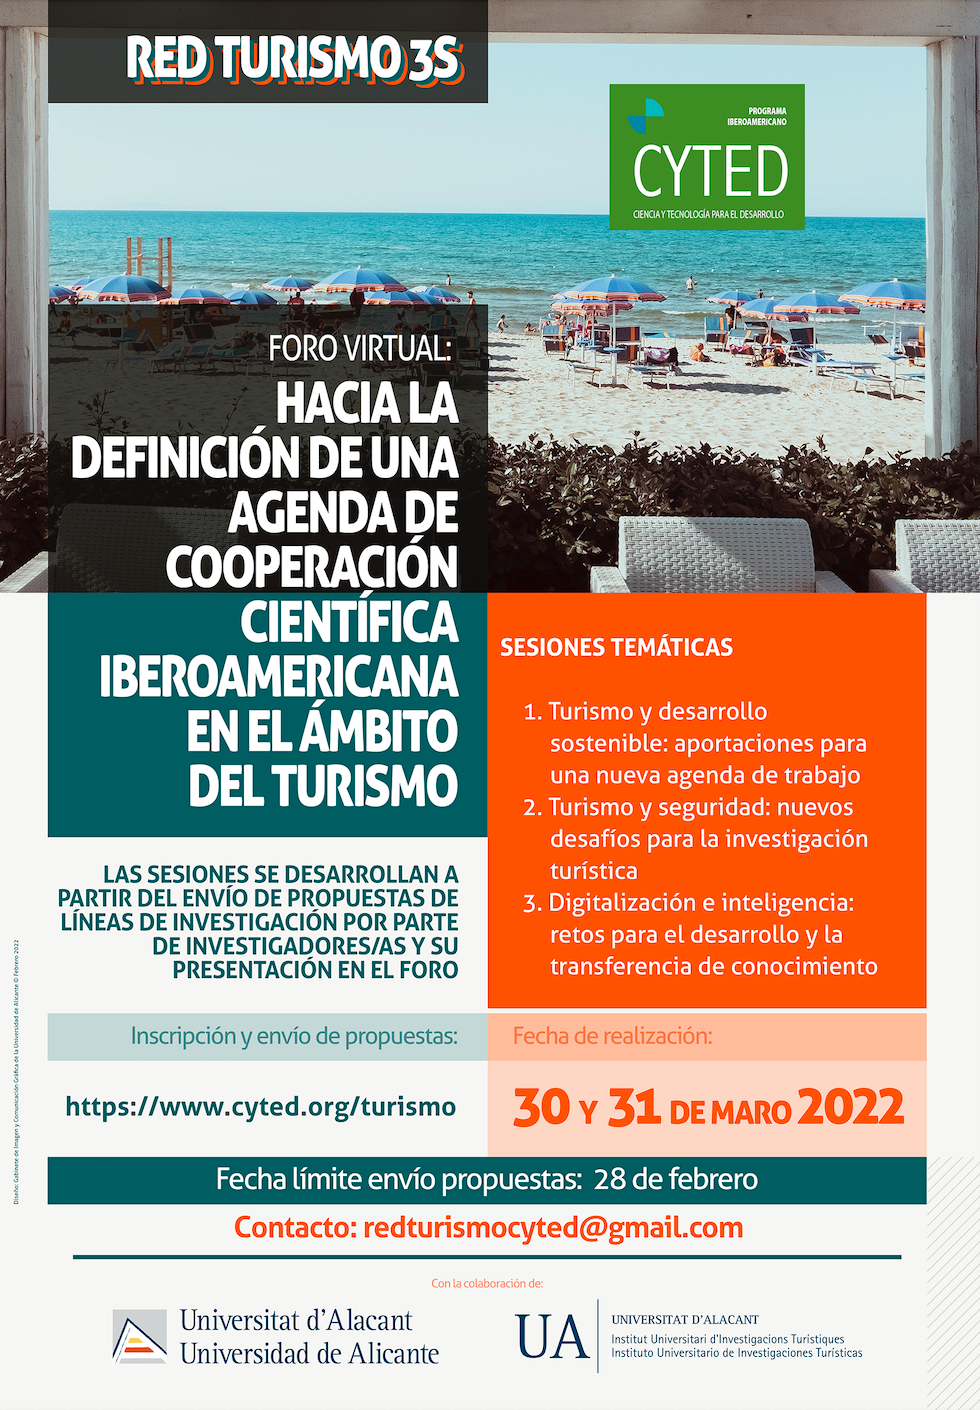 Foro Virtual de la Red de Turismo Cyted "Hacia la definición de una agenda de cooperación científica Iberoamericana en el ámbito del turismo"